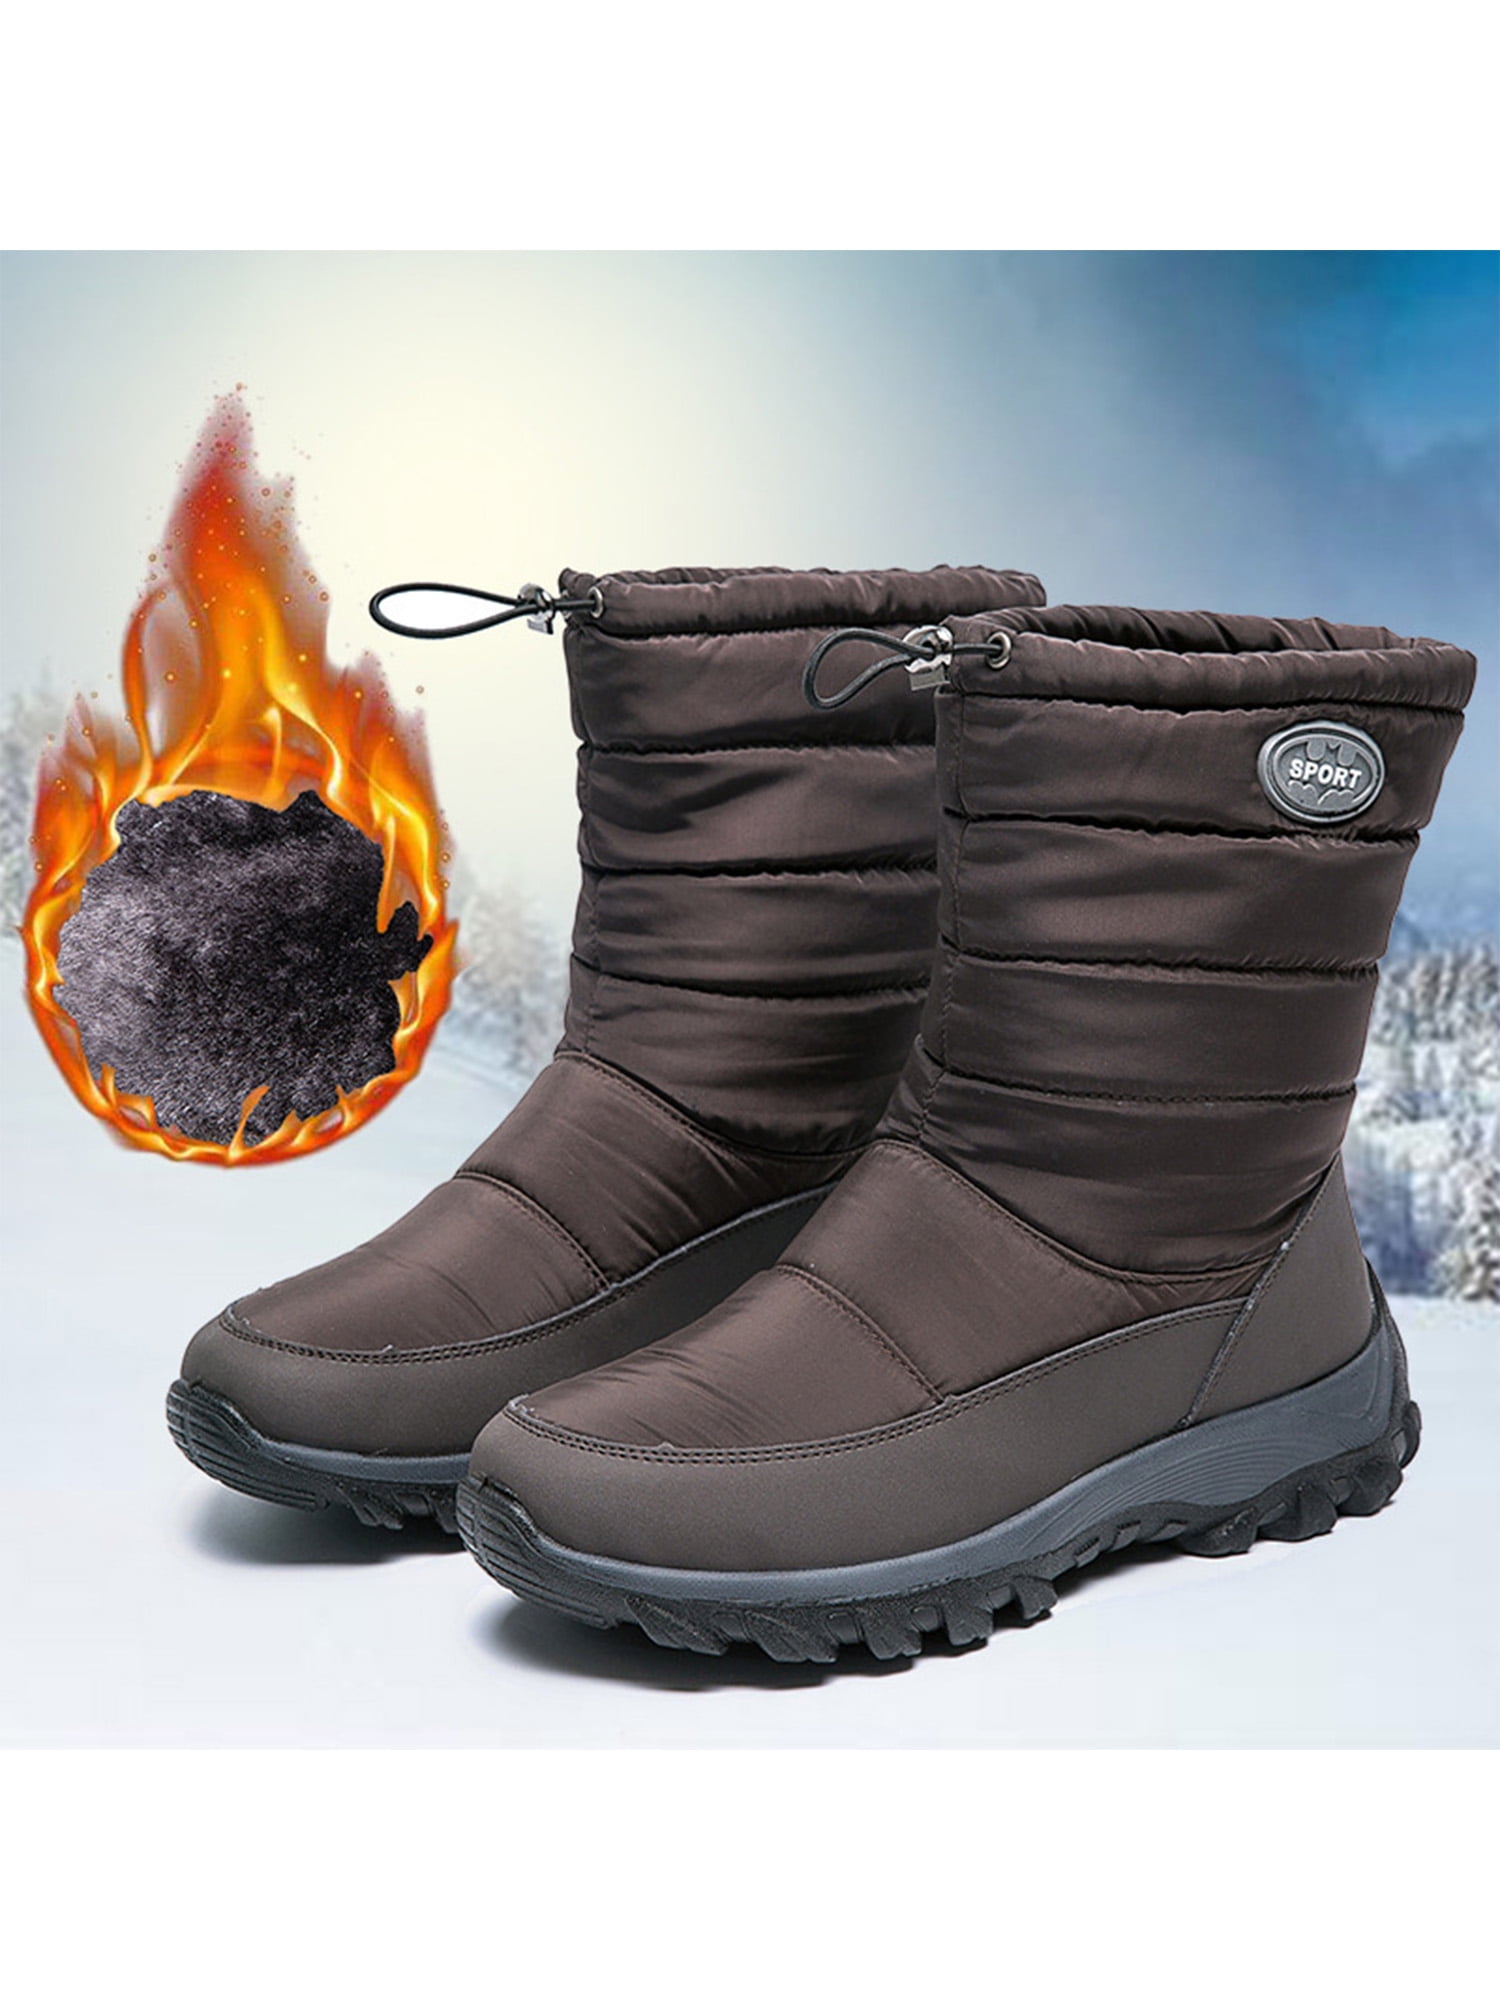 Woobling Women's Snow Boots Wide Width Winter Waterproof Sheos Warm Non ...